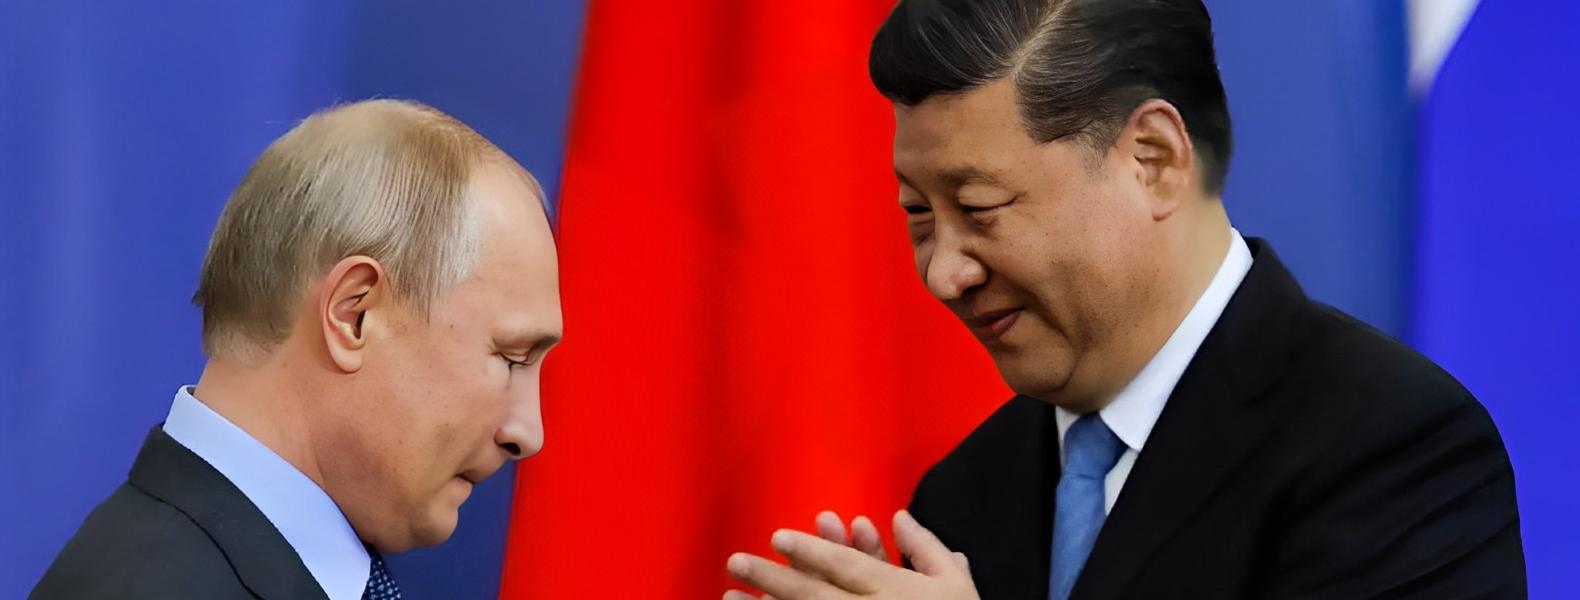 الرئيس الروسي فلاديمير بوتين ونظيره الصيني شي جين بينغ (وكالات)